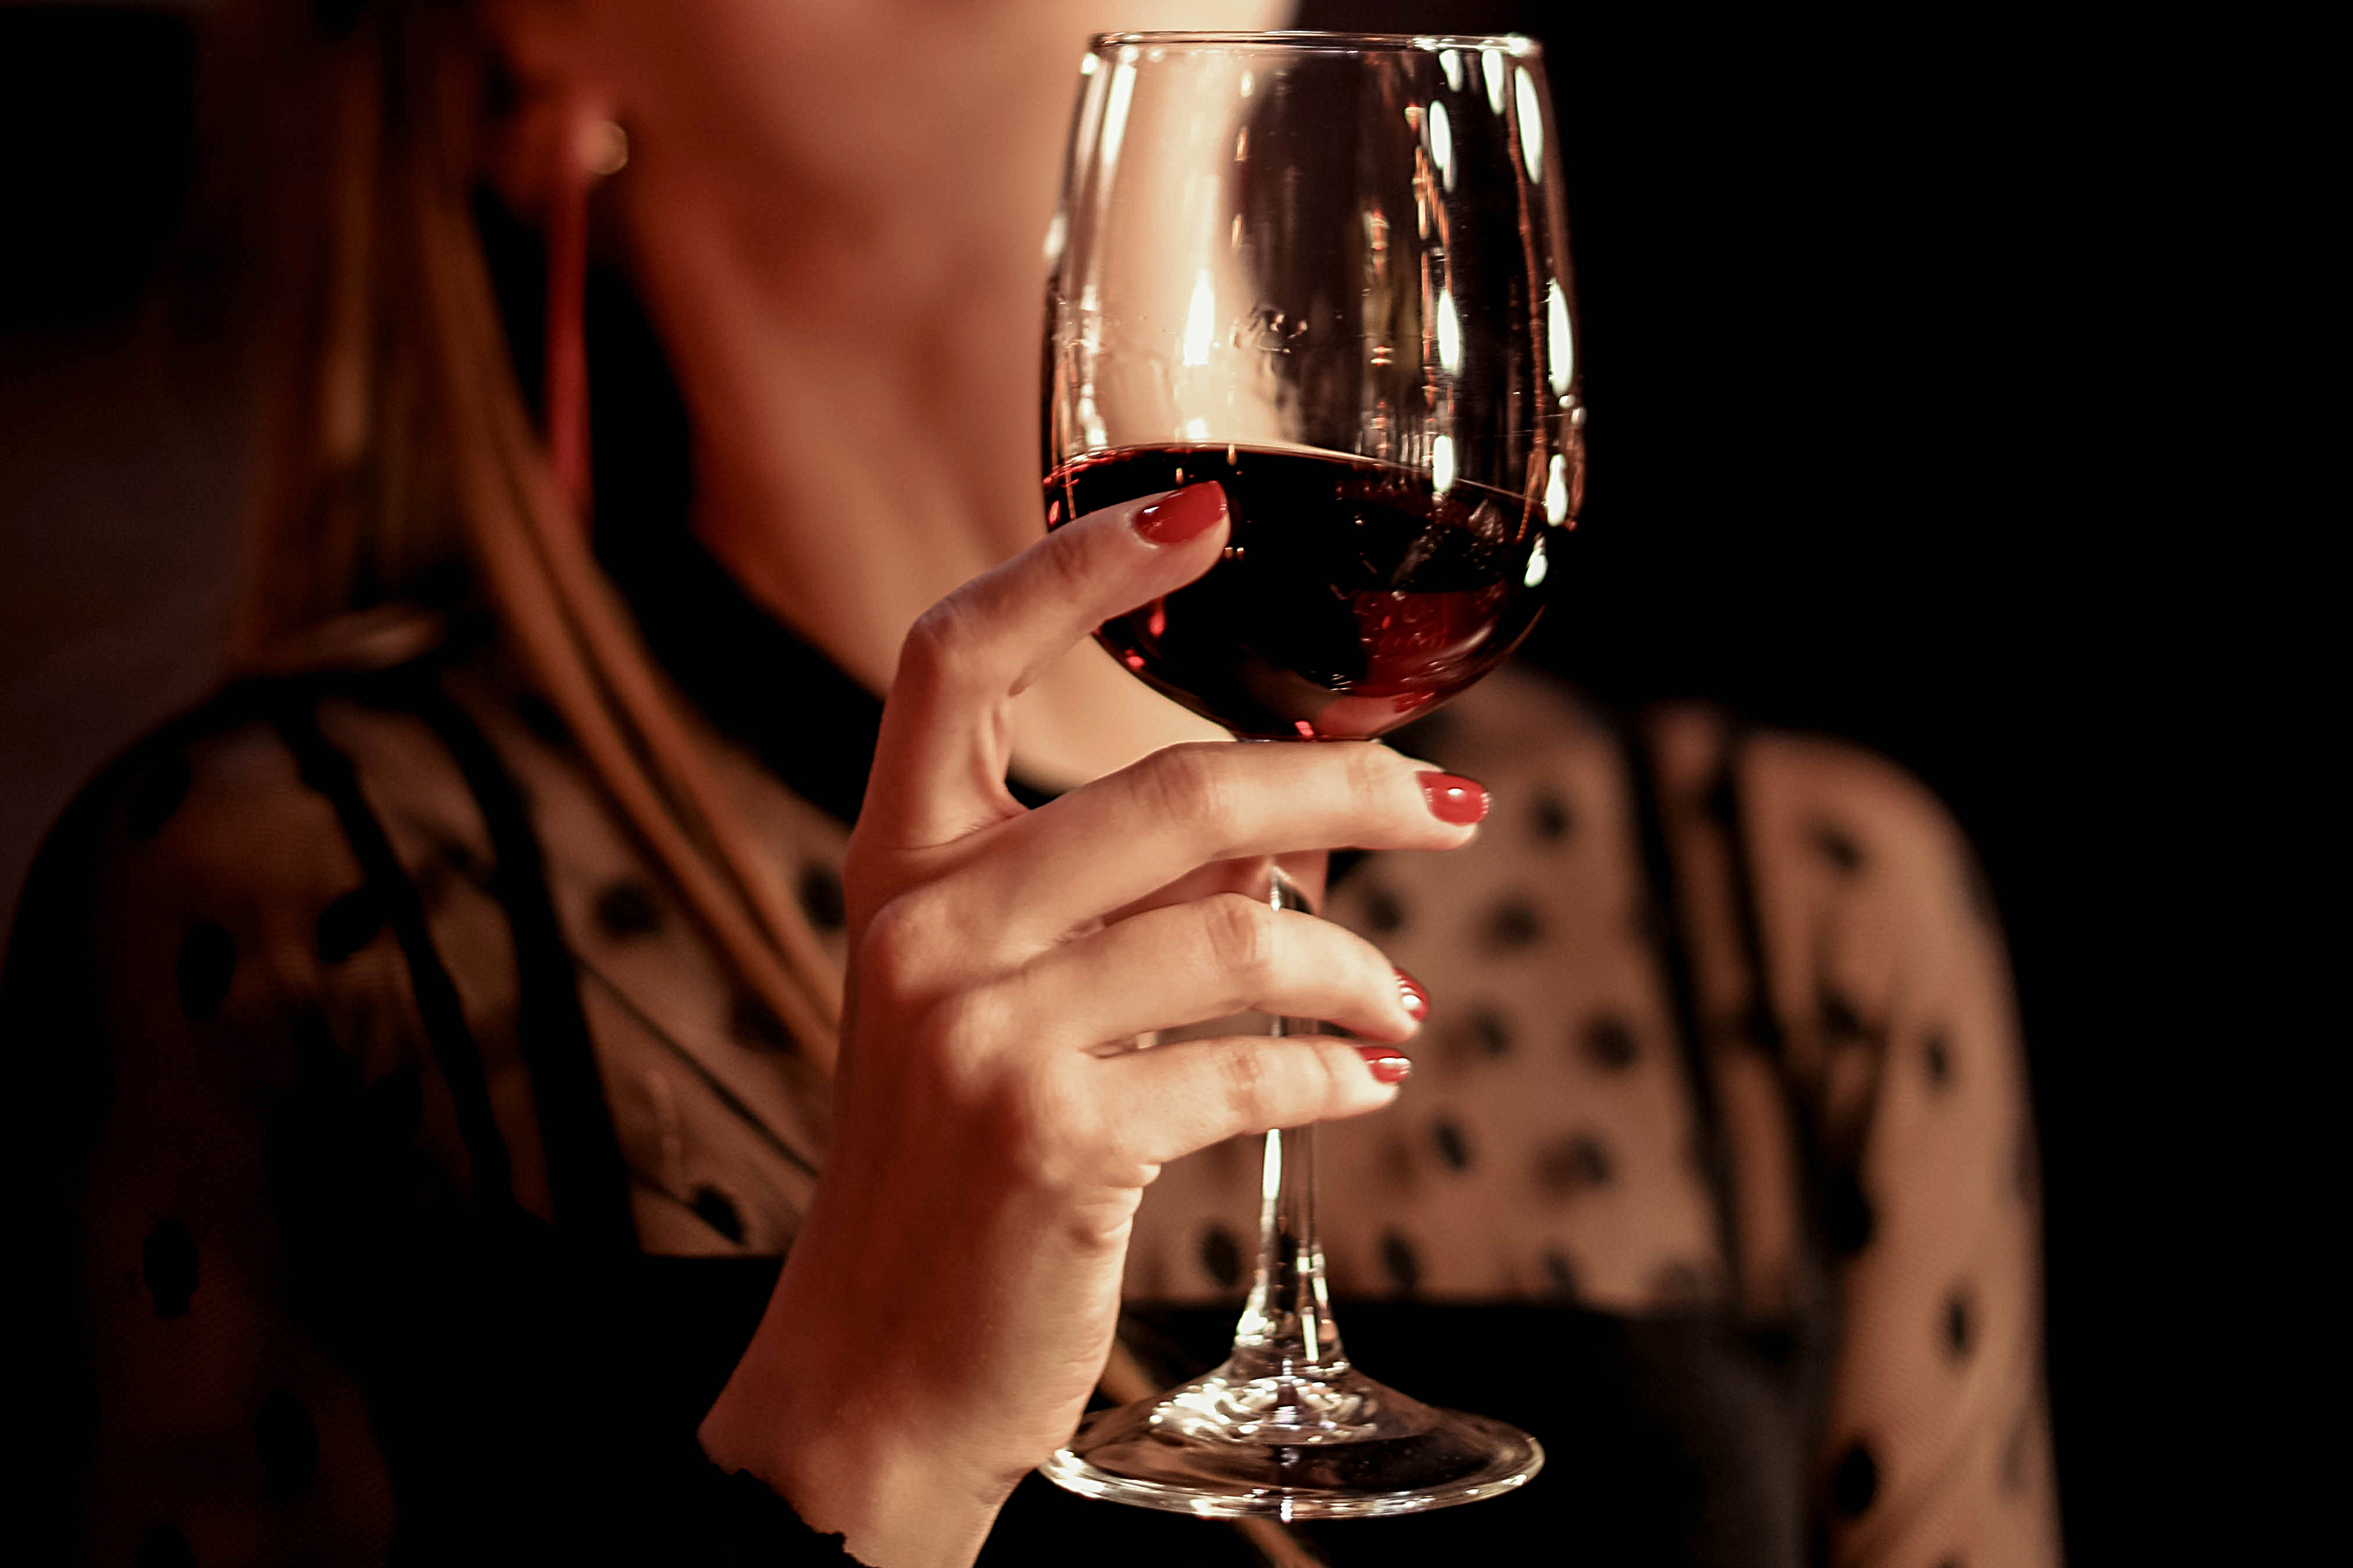 Weibliche Hand hält ein Glas Rotwein | Quelle: Shutterstock